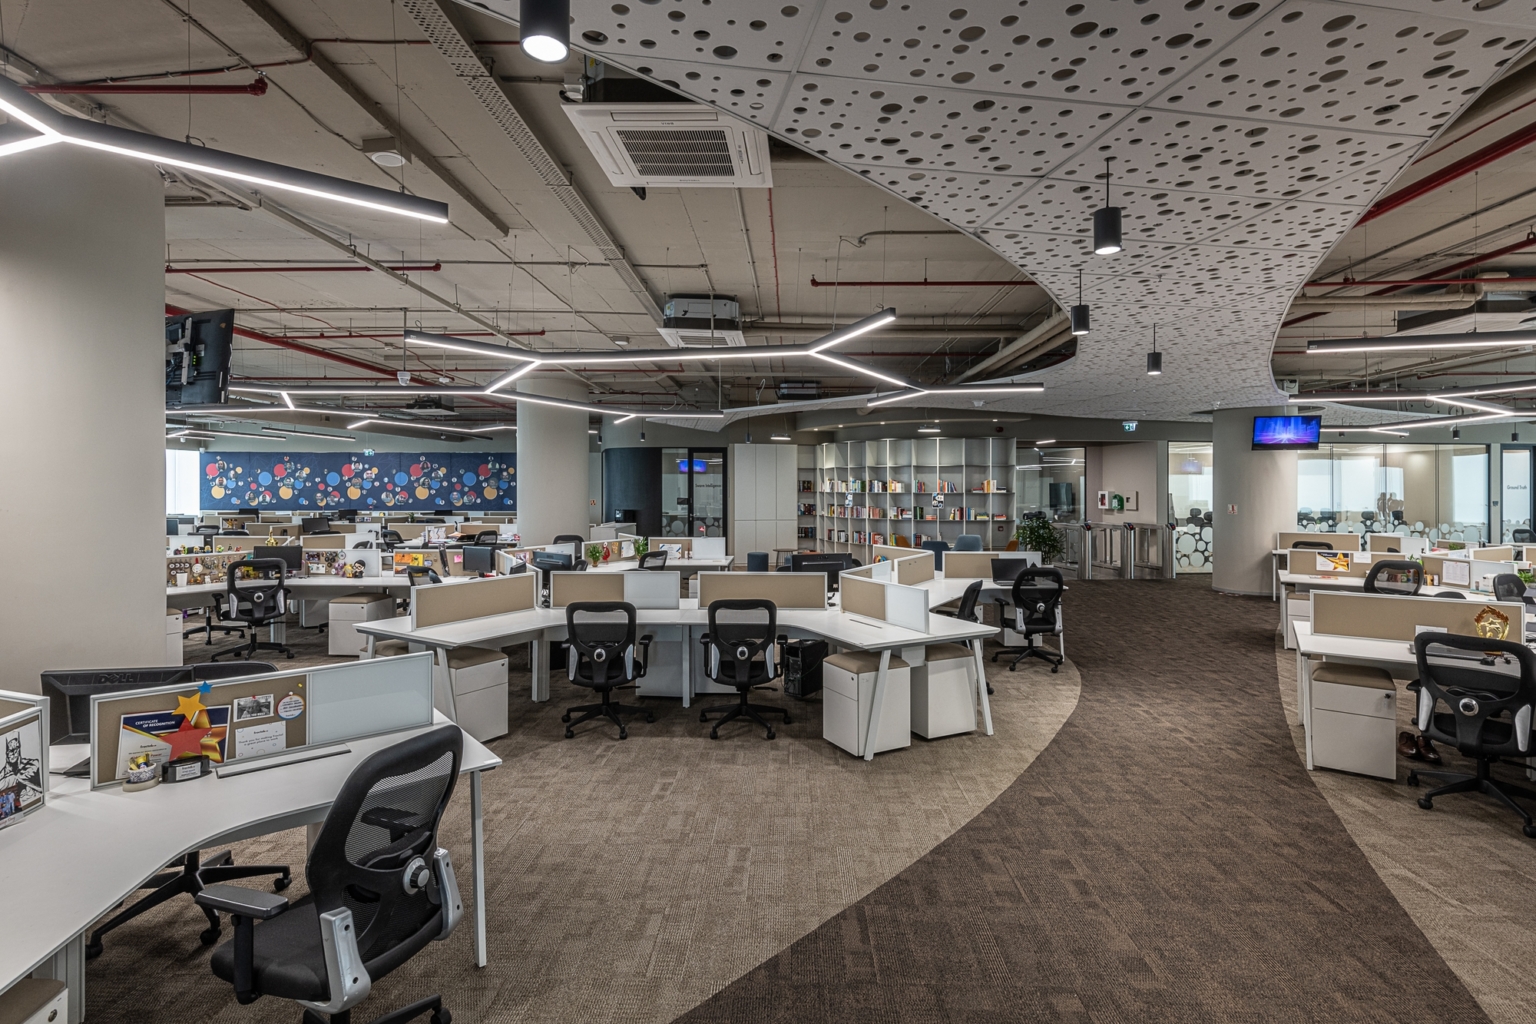 Chọn lựa và thiết kế nội thất phù hợp giúp không gian trở nên rộng rãi hơn | Nguồn: Fractal Analytics Offices – Mumbai.